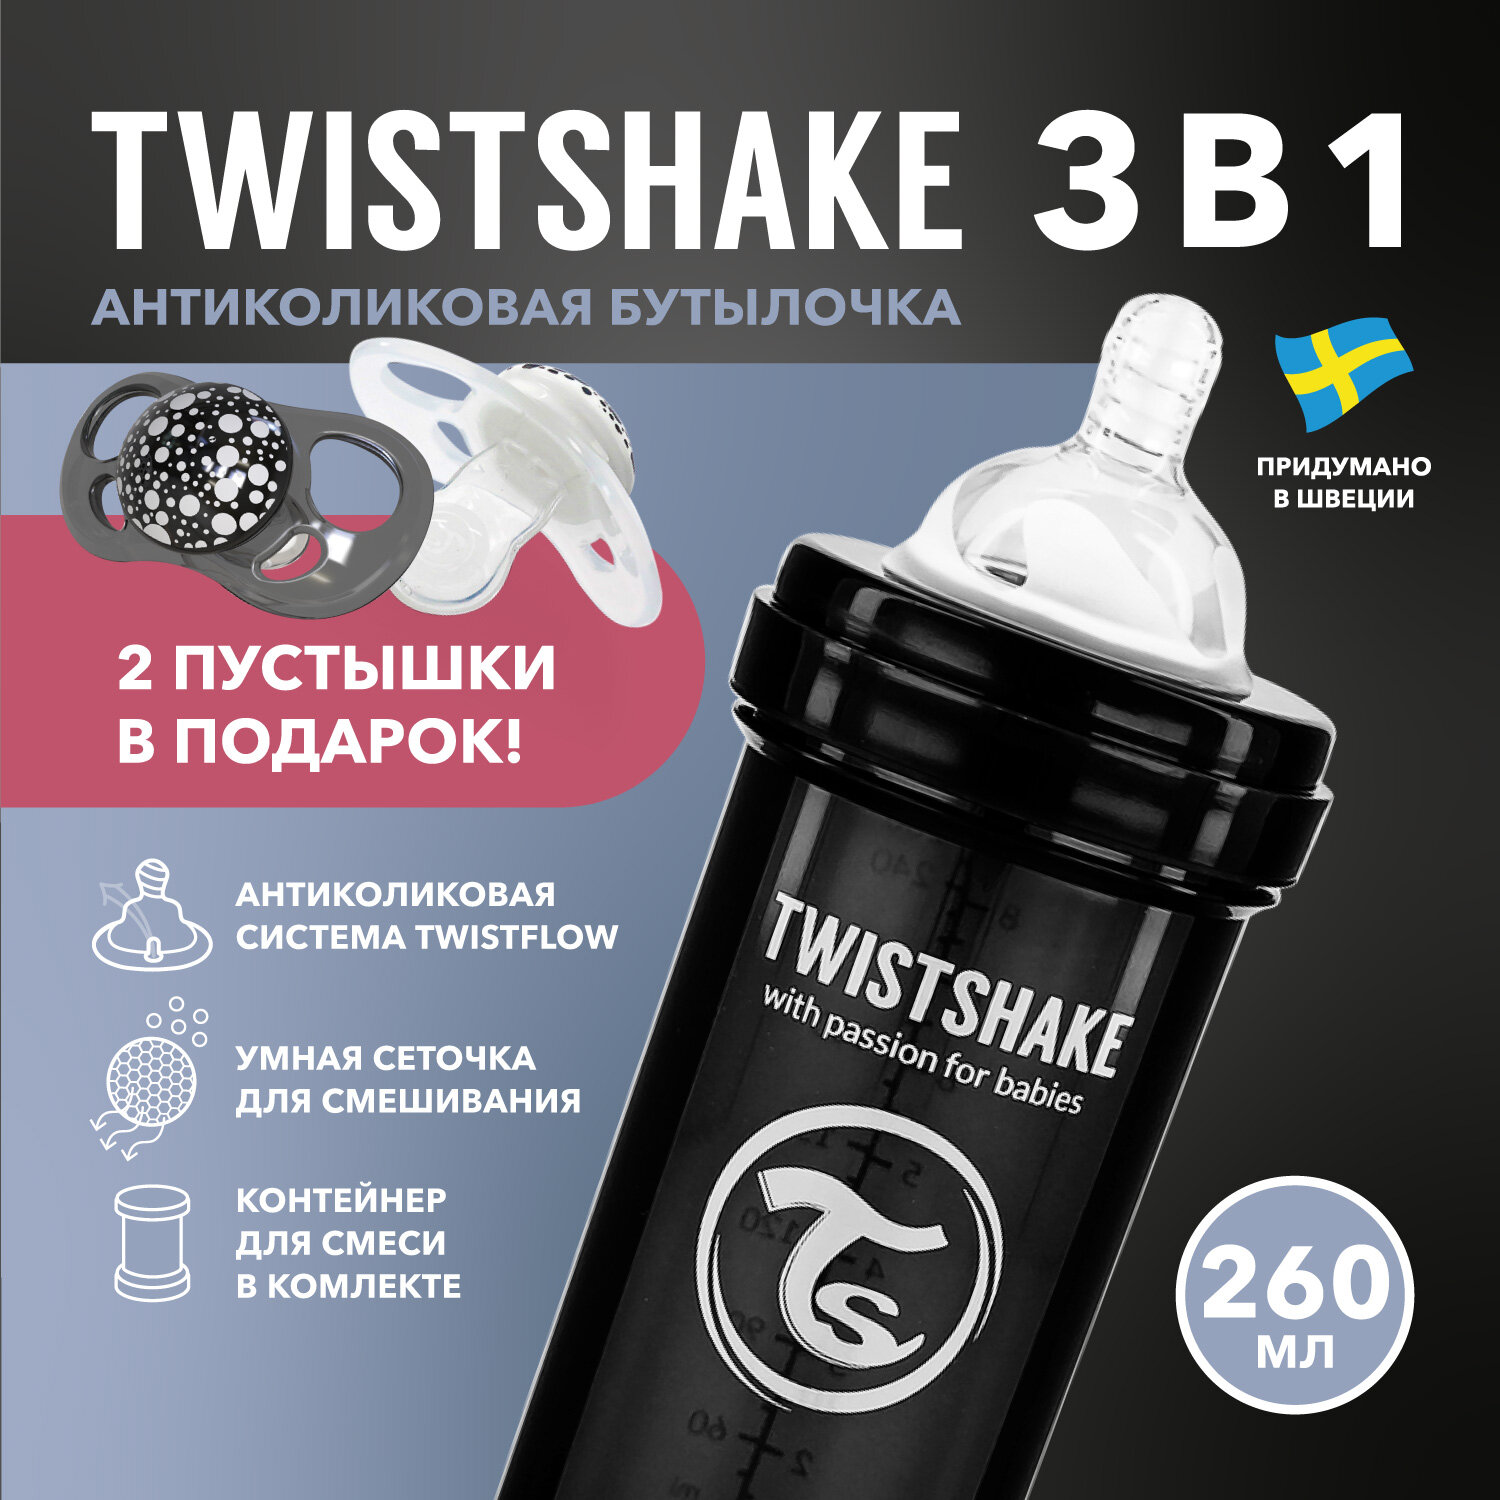 Детская антиколиковая бутылочка Twistshake для кормления, чёрная, 260 мл, от 2+ мес, подарок 2 пустышки